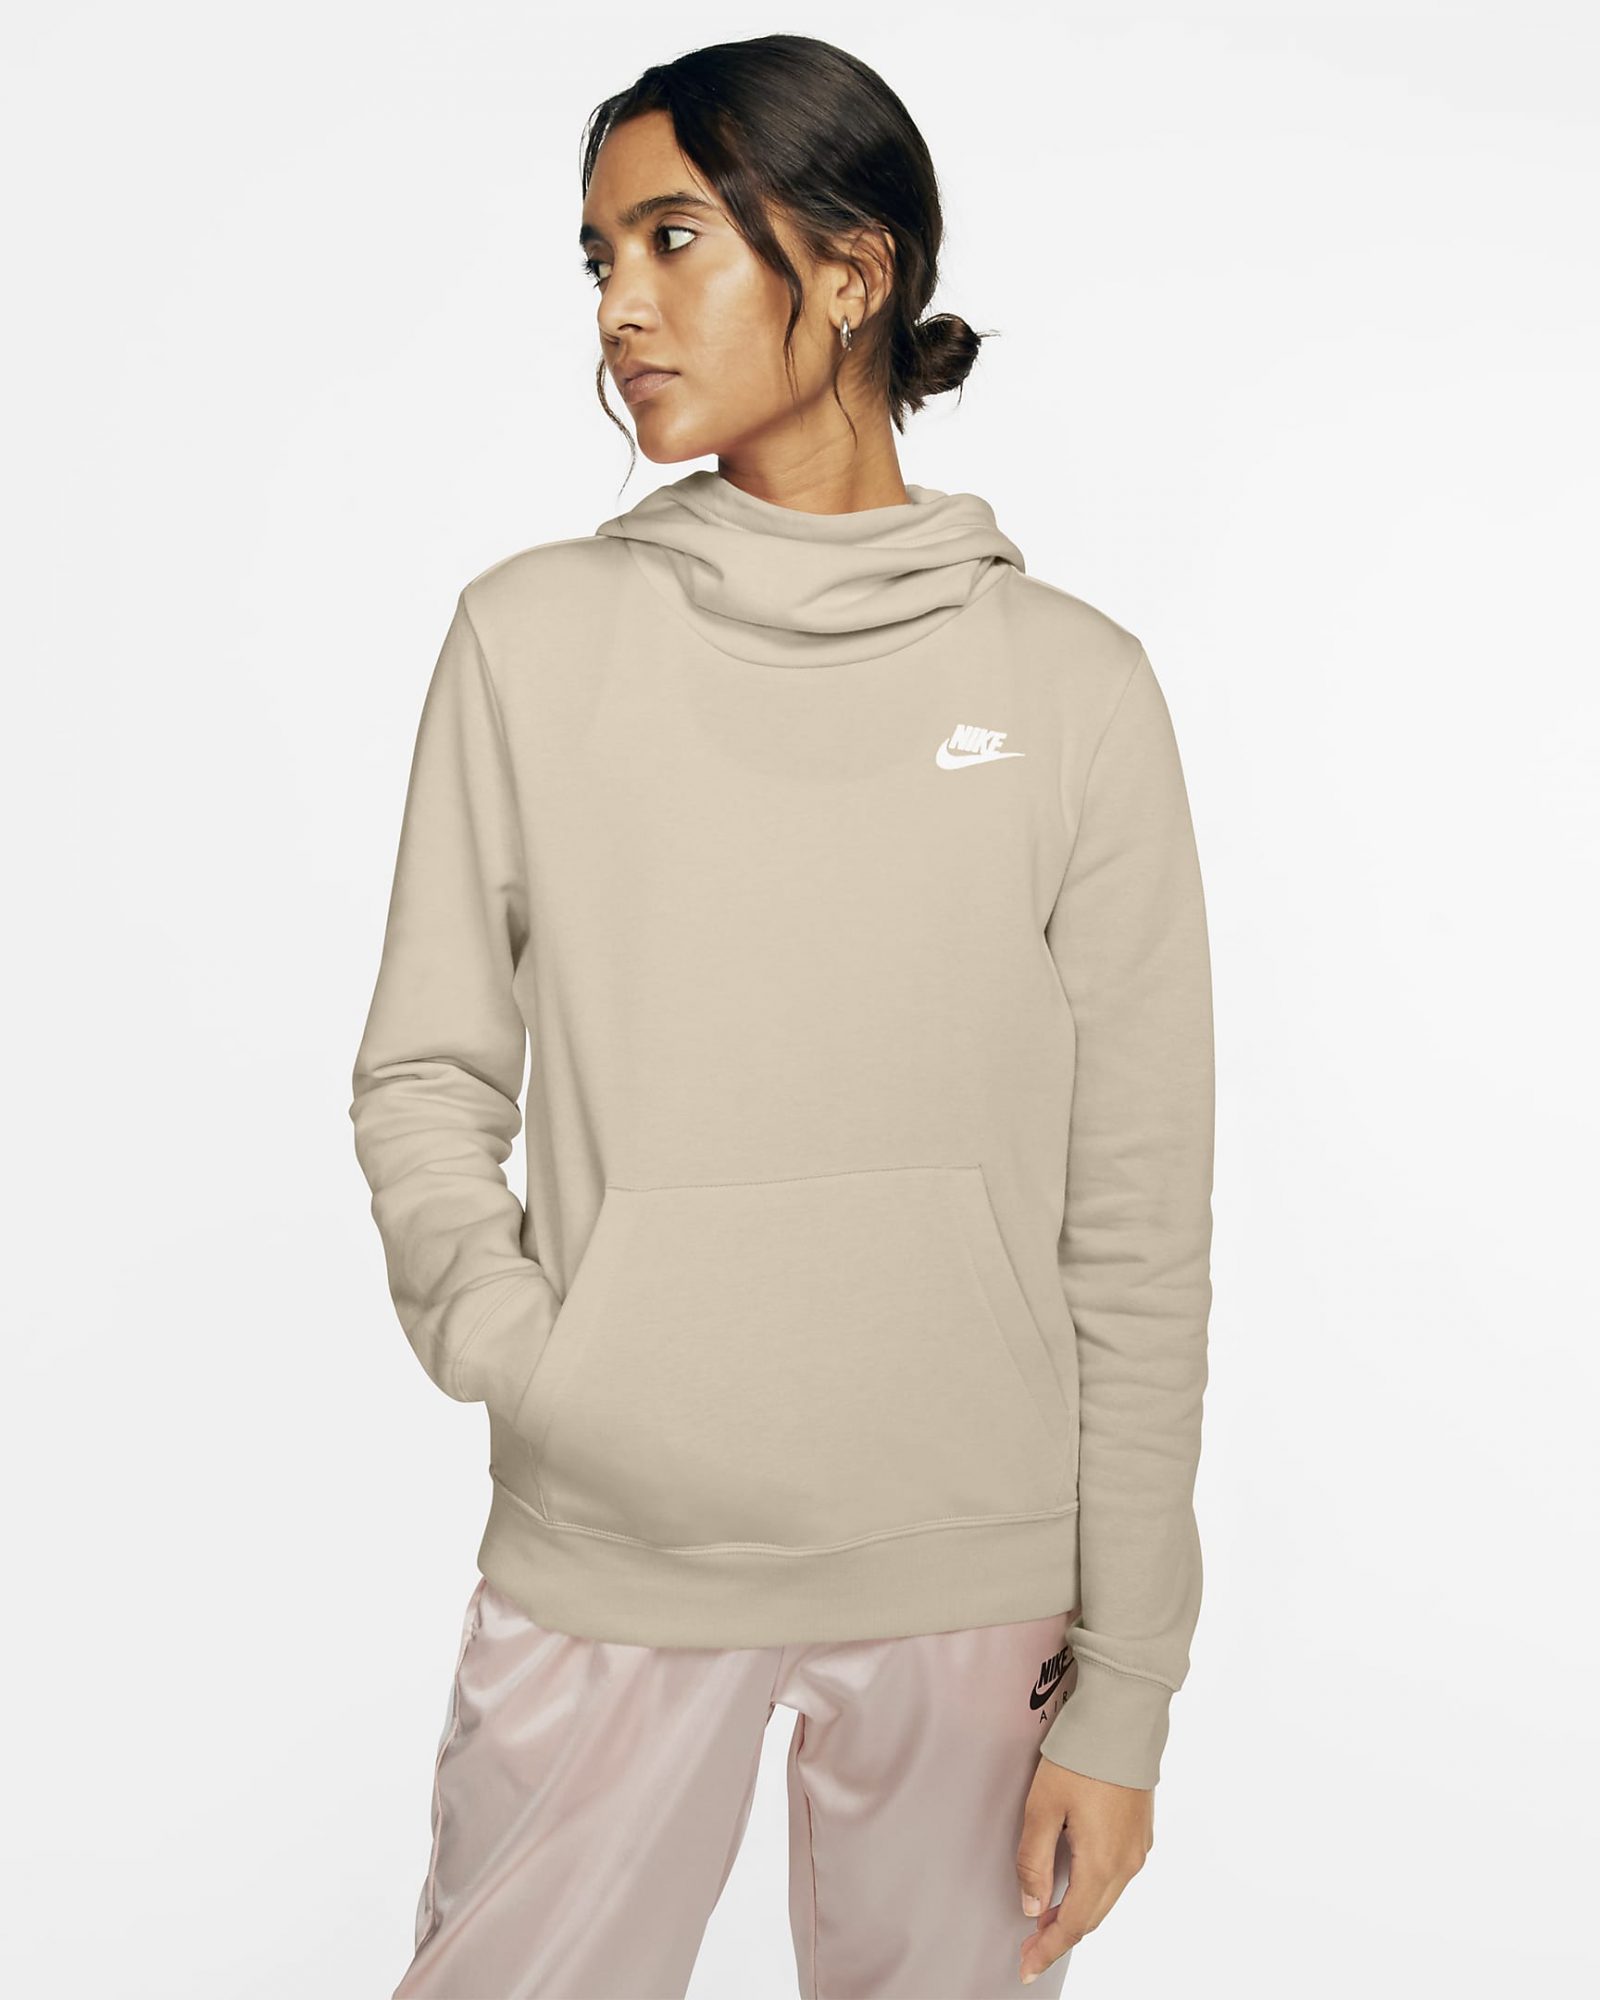 Nike sweatshirt best activewear brands